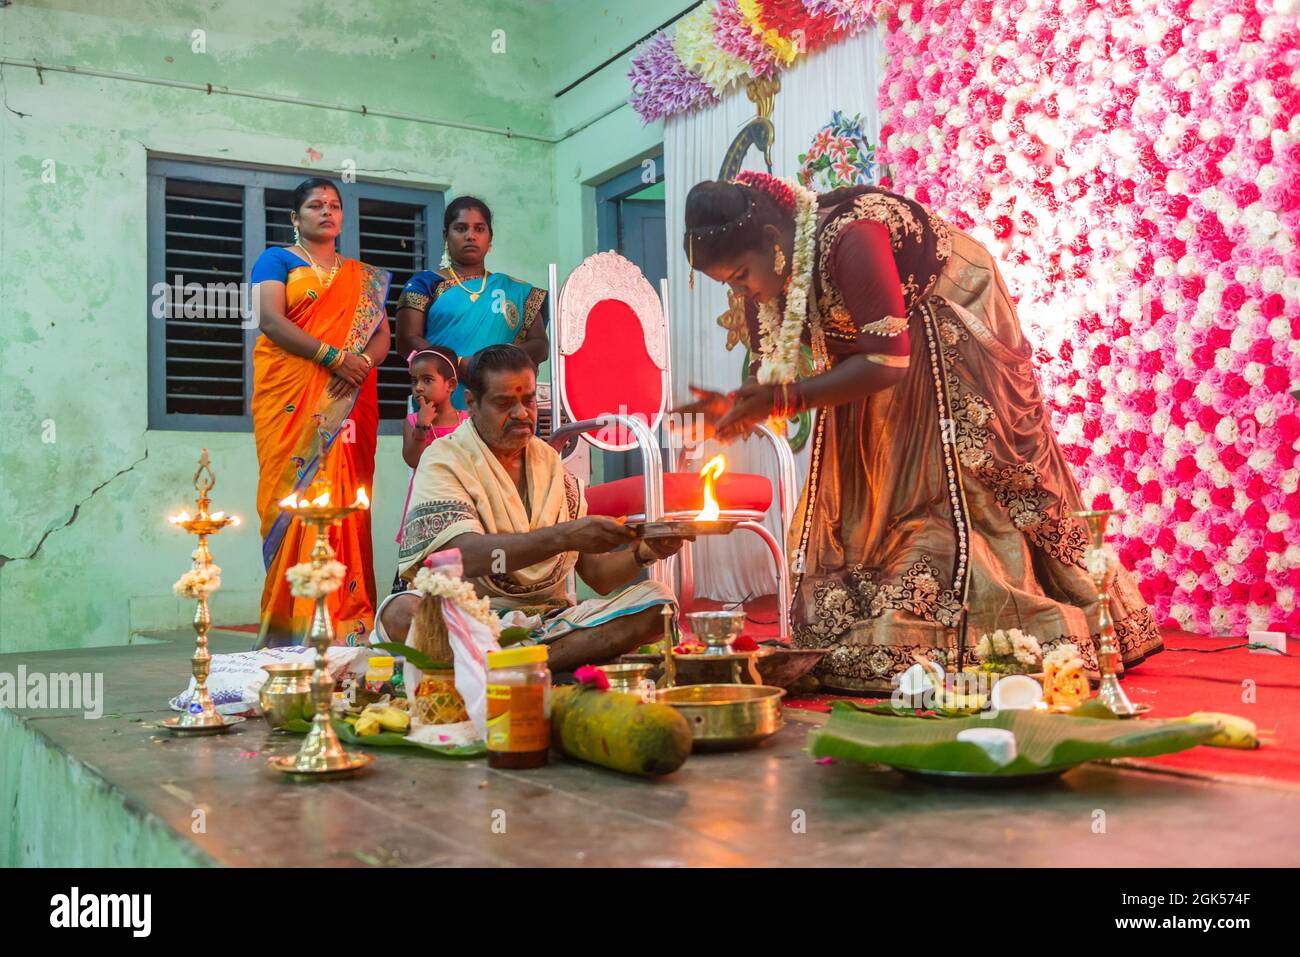 Tamil Nadu, Inde - 12 septembre 2021 : le Ritushuddhi ou Ritu Kala Samskara est la cérémonie qui célèbre la transition d'une jeune fille à la féminité. Ceci Banque D'Images